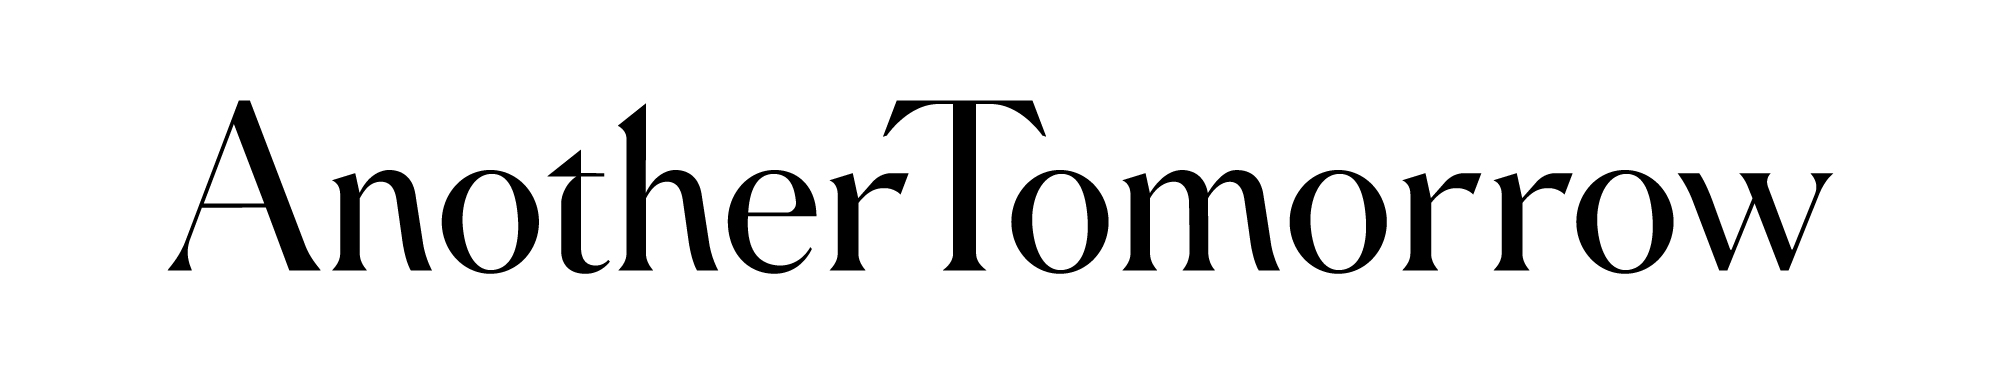 AnotherTomorrow_logo